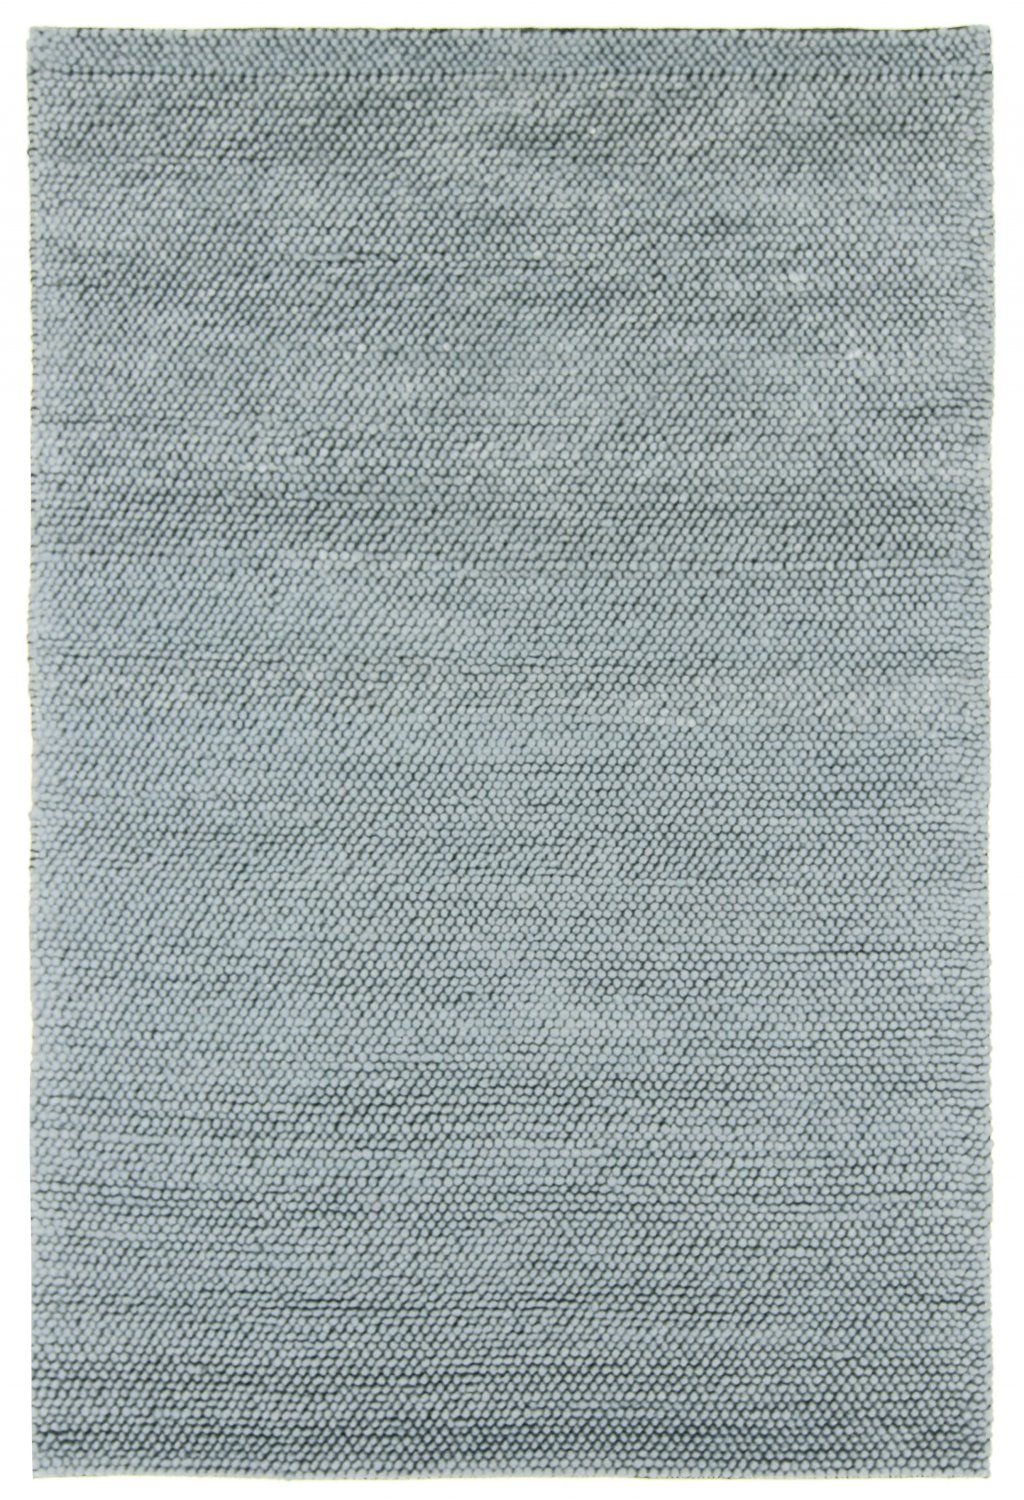 Ullteppe - Avafors (grå)